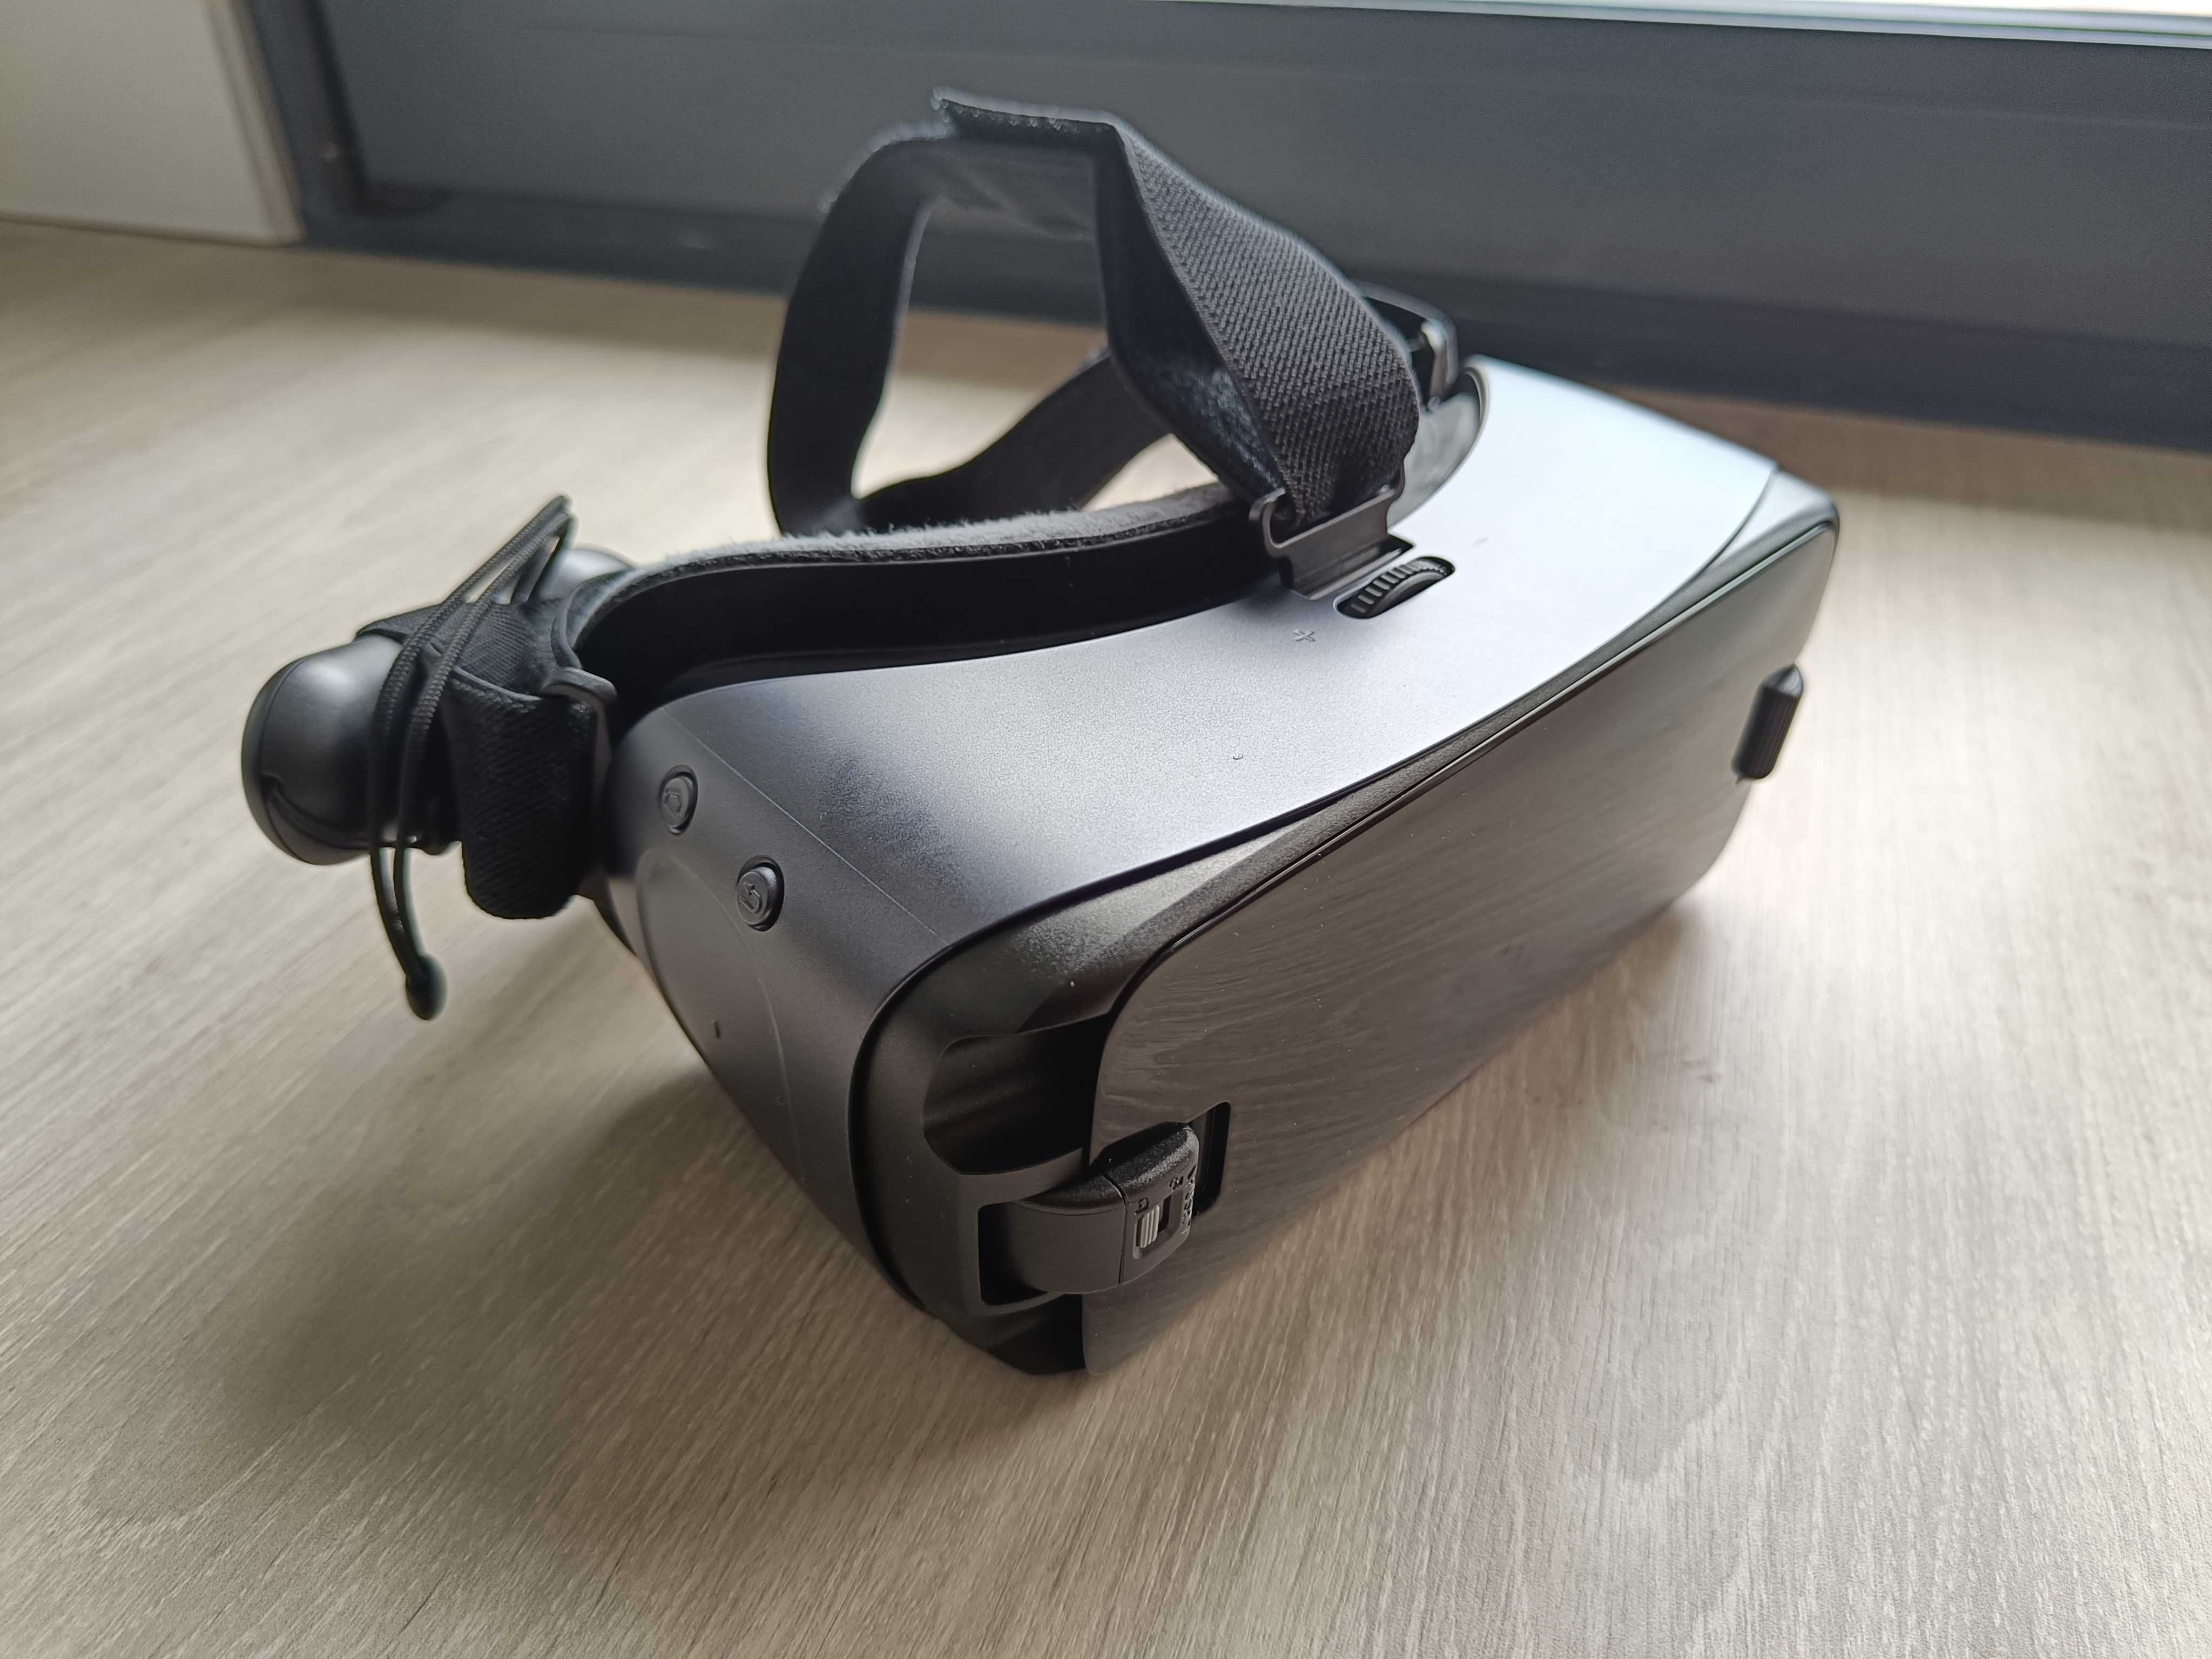 Gear VR com controlador